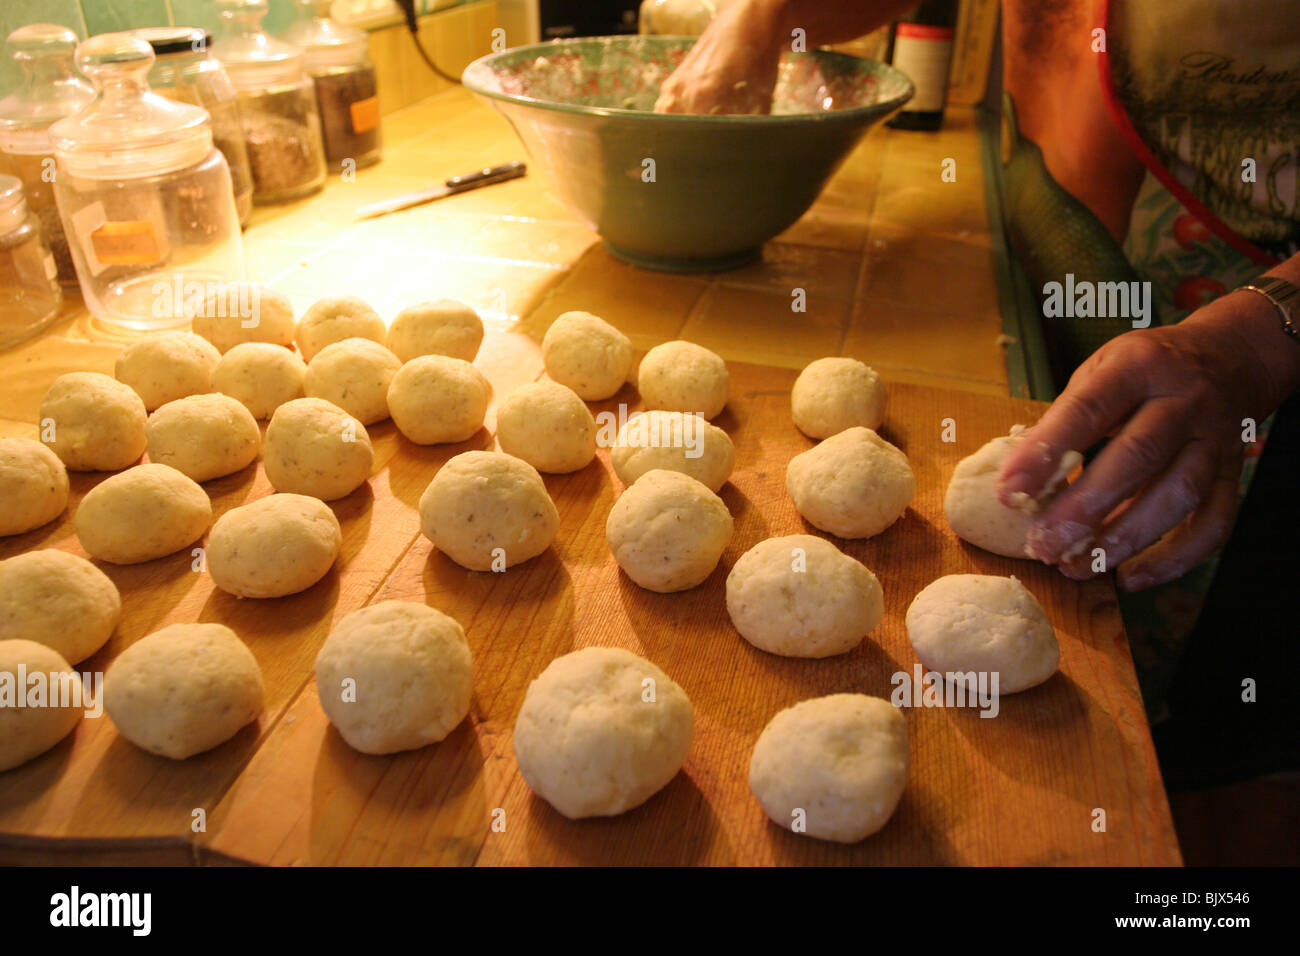 Knödel, German dumplings, are prepared before being boiled. Stock Photo